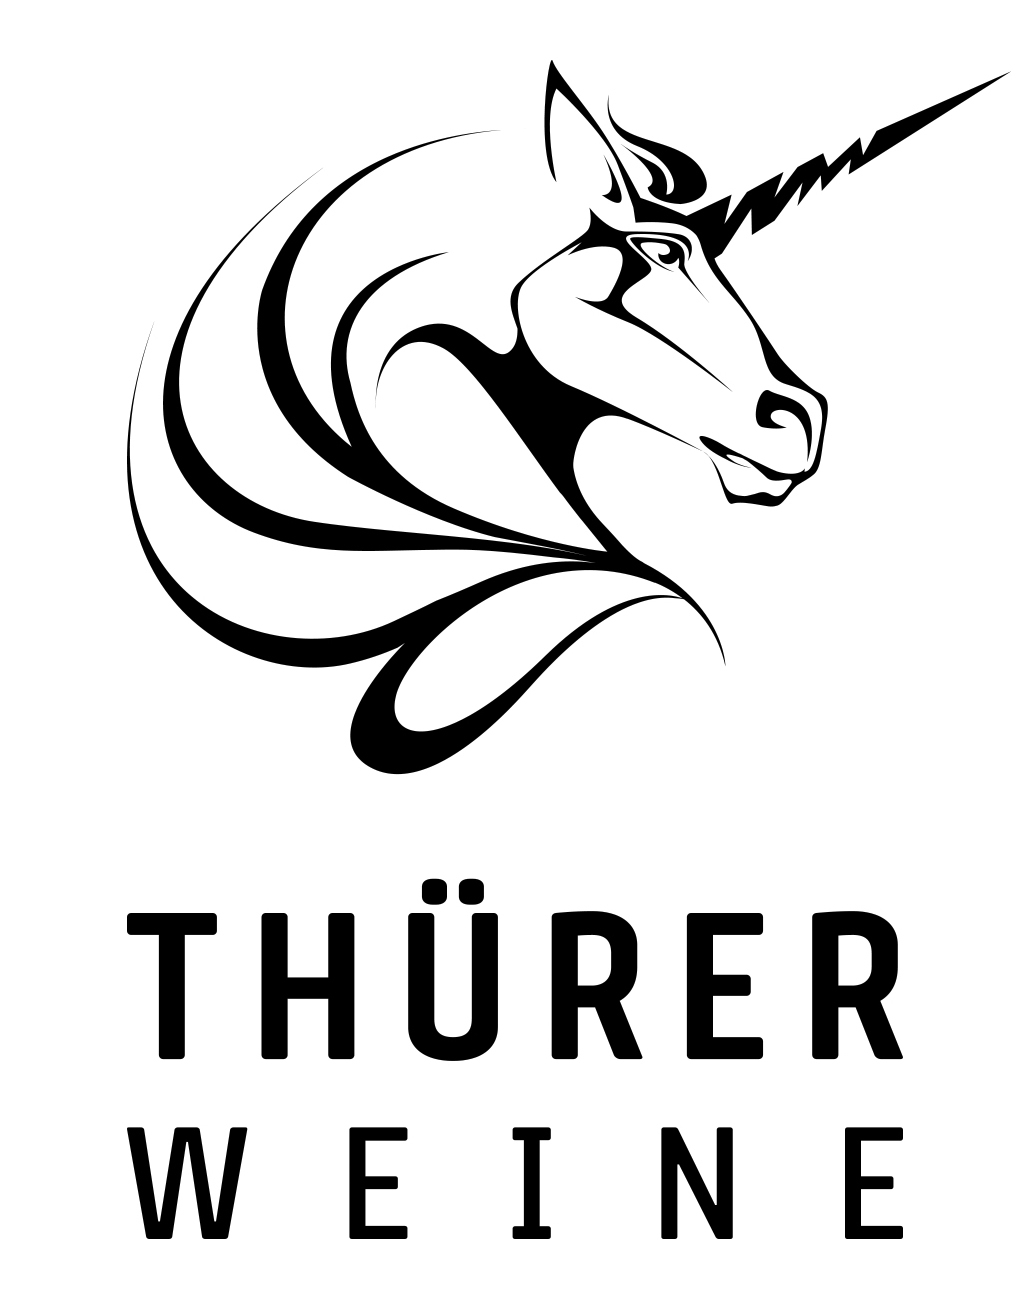 WINE TASTING - Thürer Weine